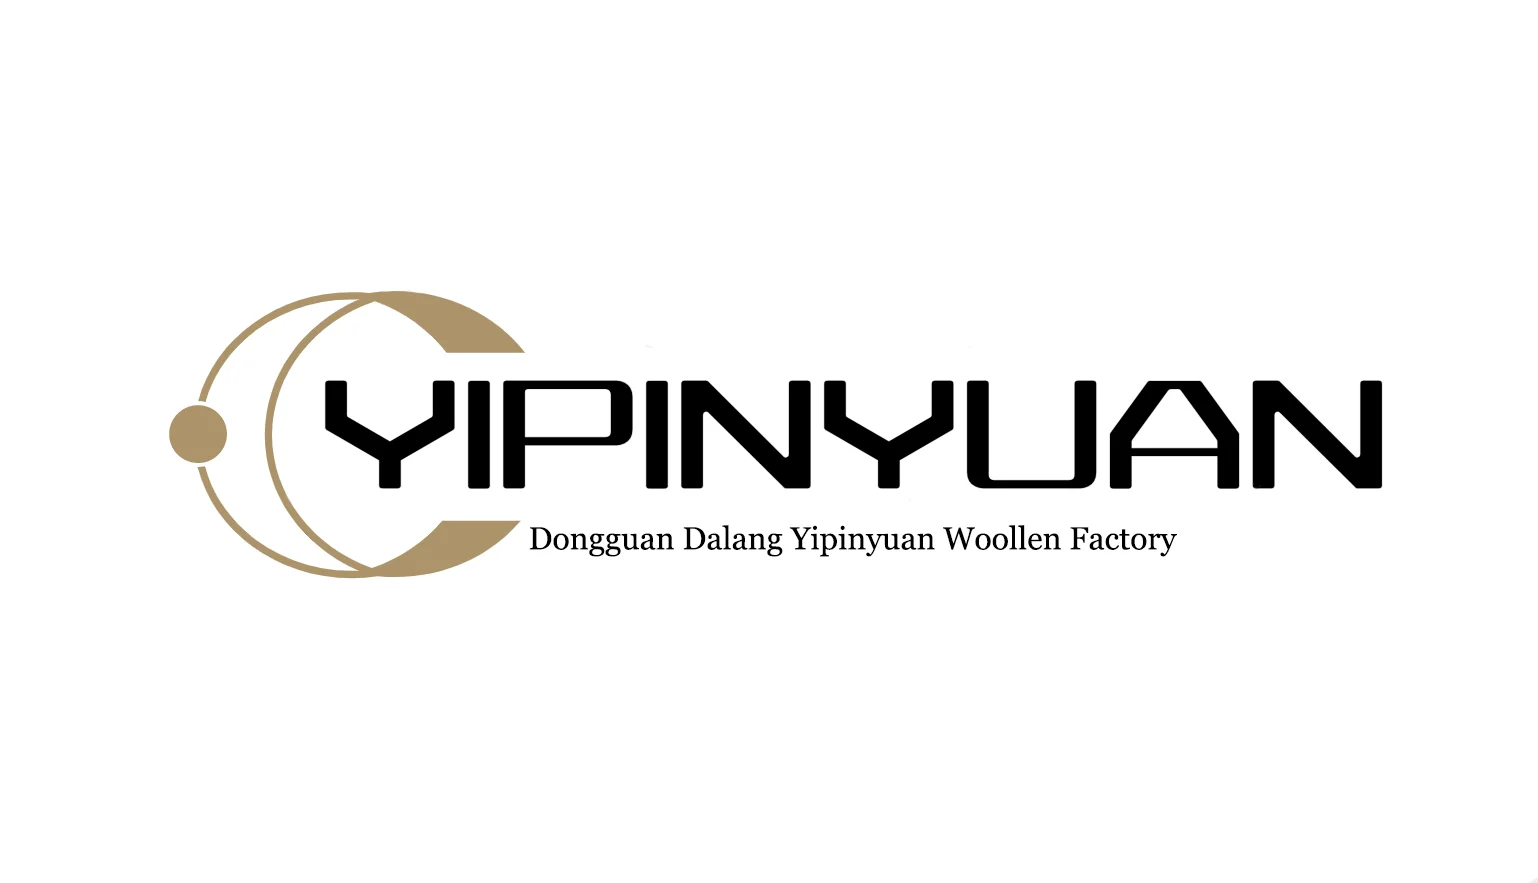 Dongguan Dalang Yipinyuan Woollen Factory